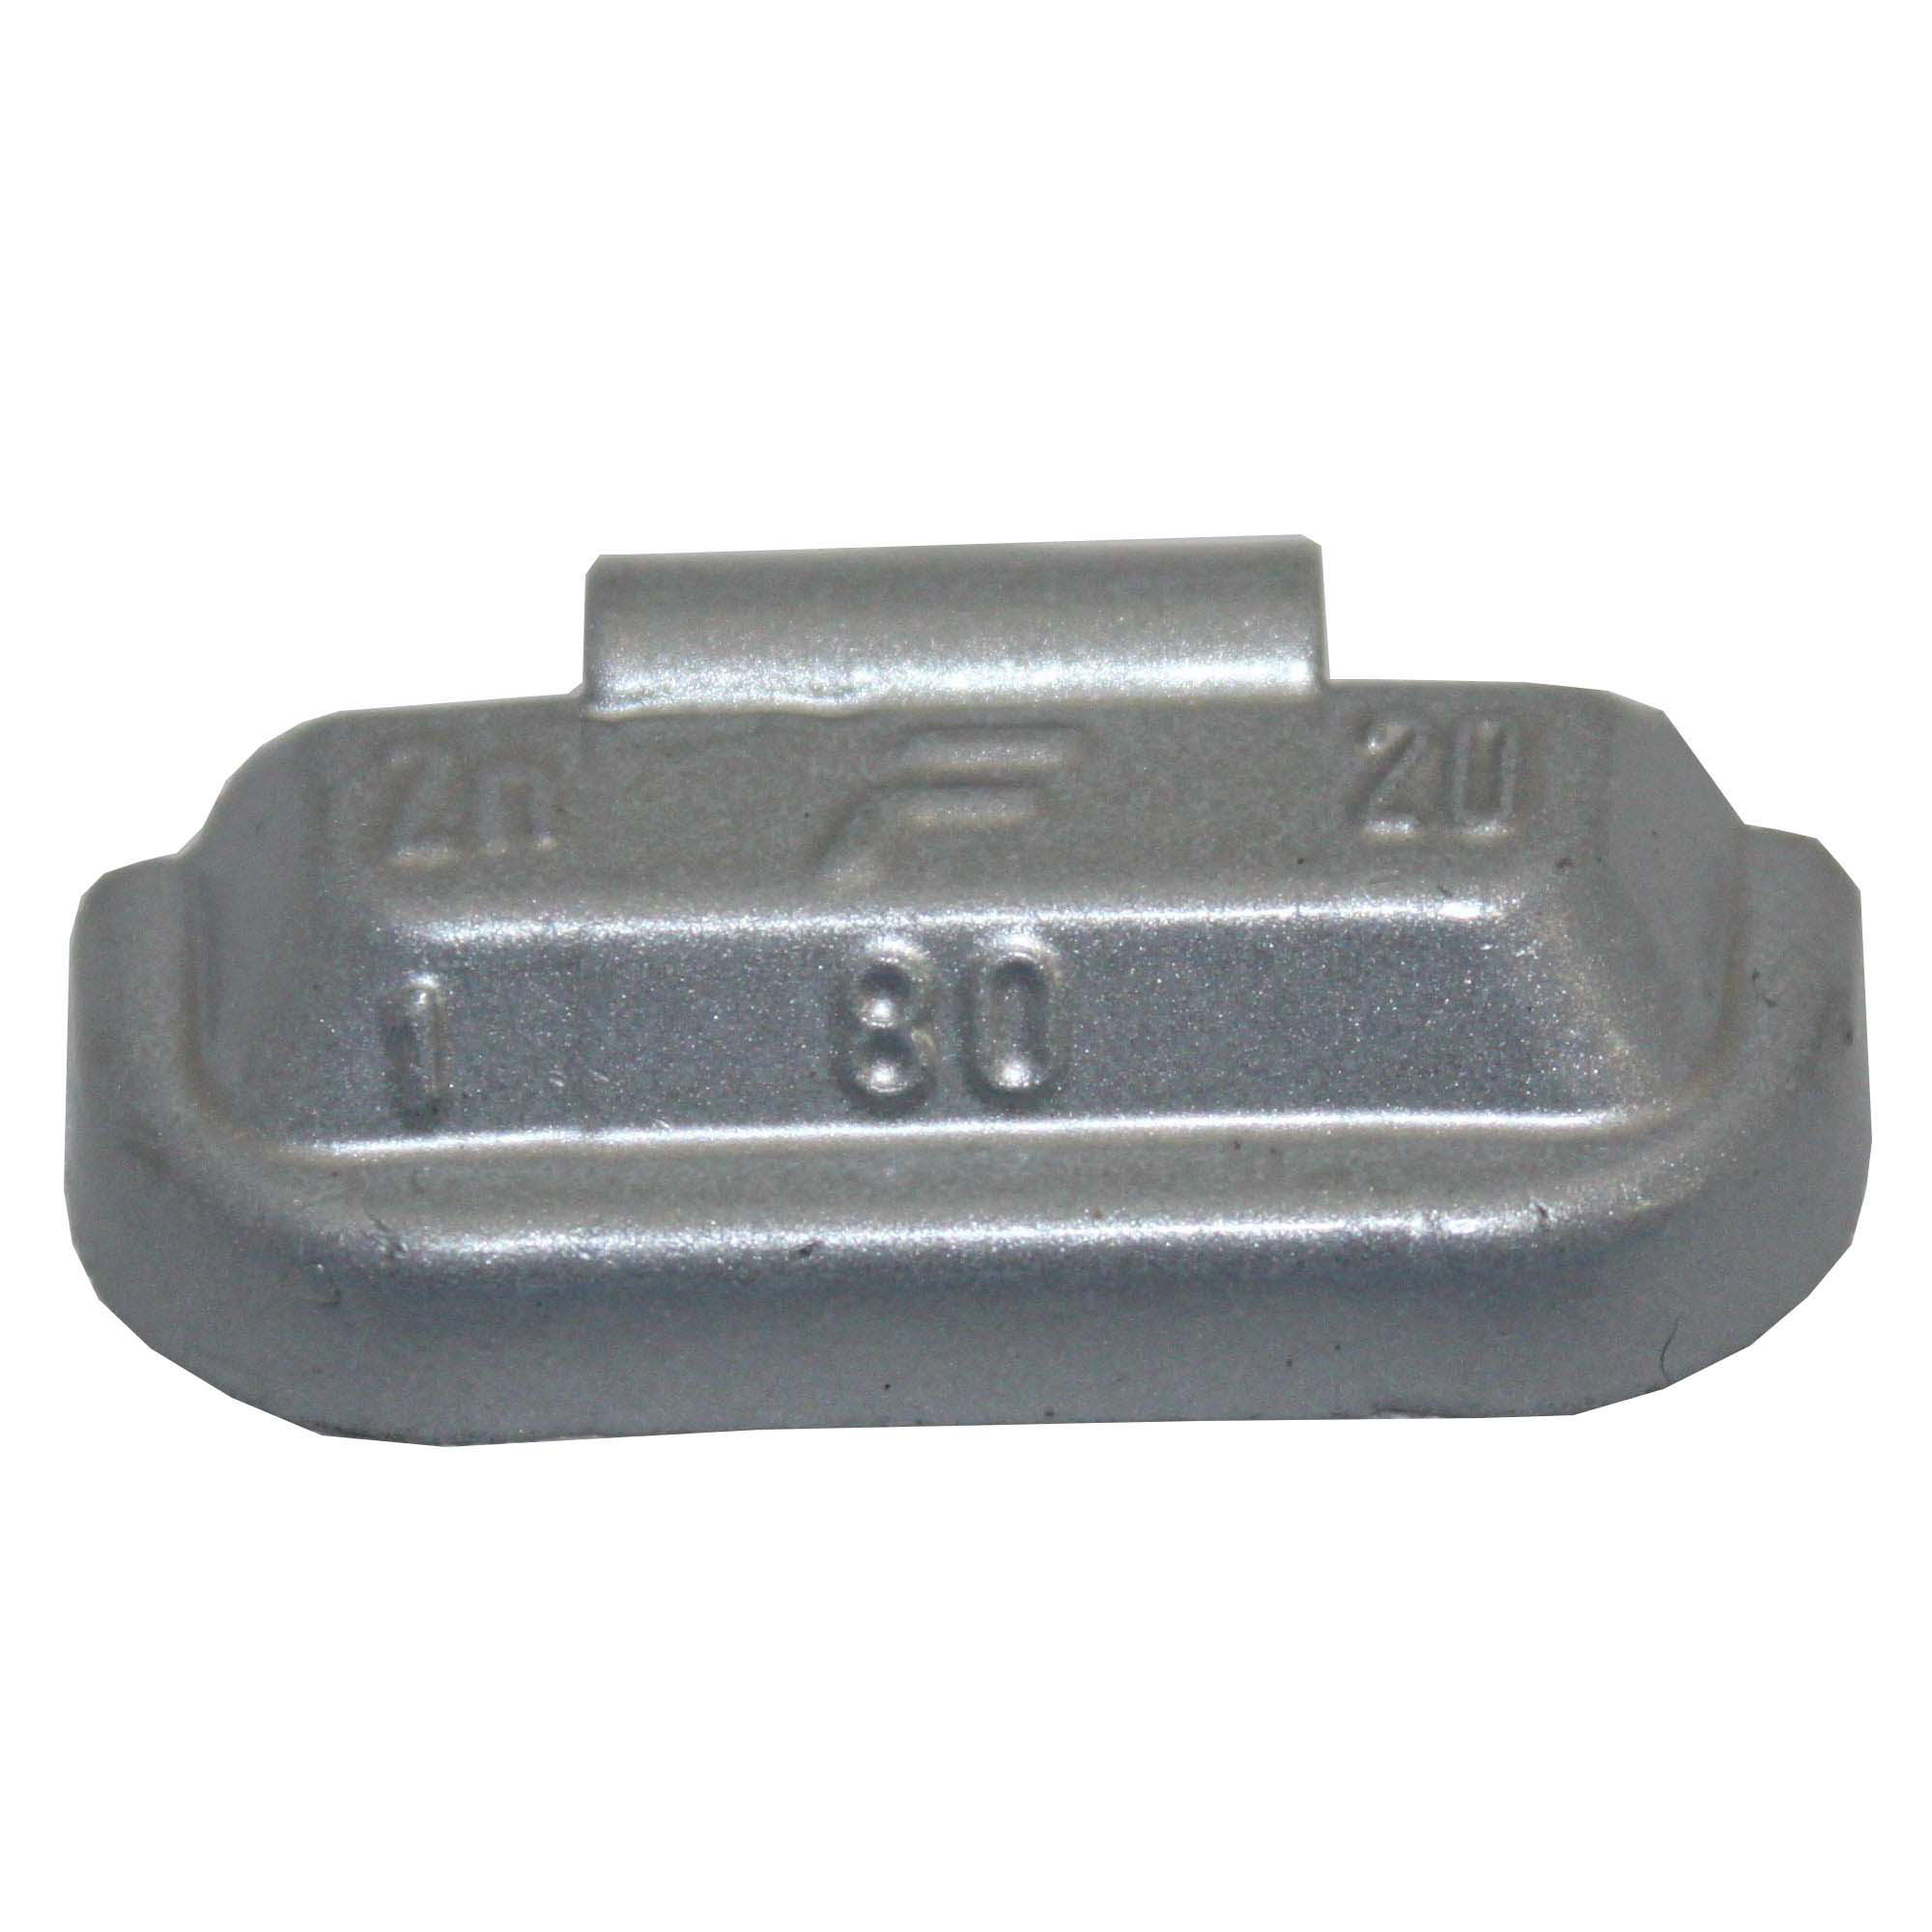 WEGMANN automotive-Schlaggewicht - Typ 80, 20 g, Zink, Silber-1180-0200-151